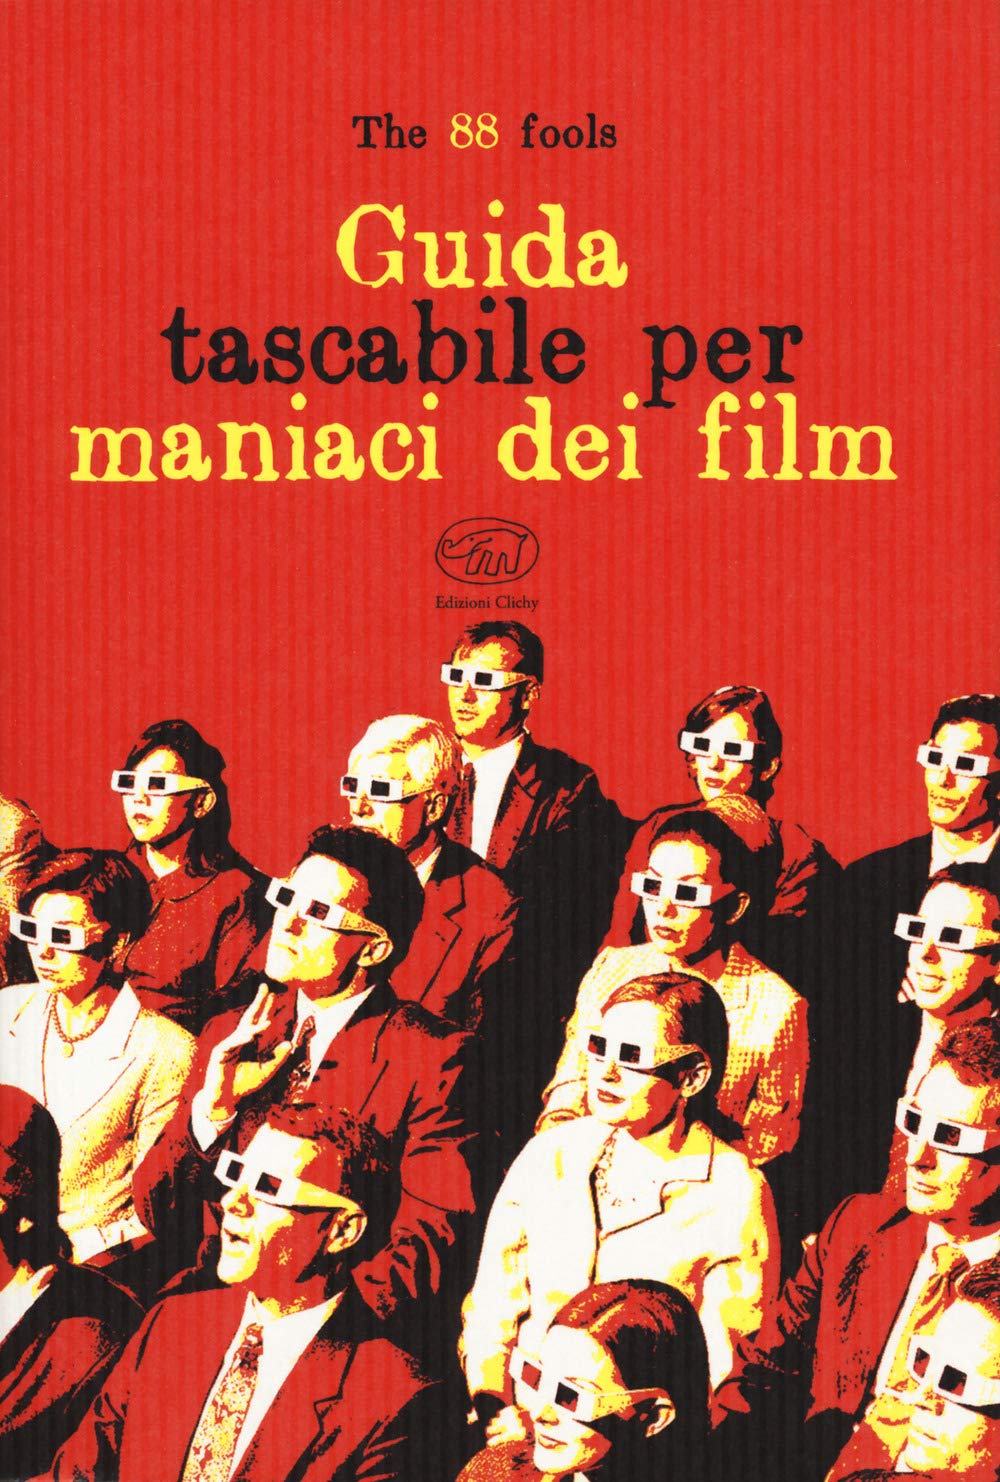 Guida tascabile per maniaci dei film - The 88 fools - Edizioni Clichy